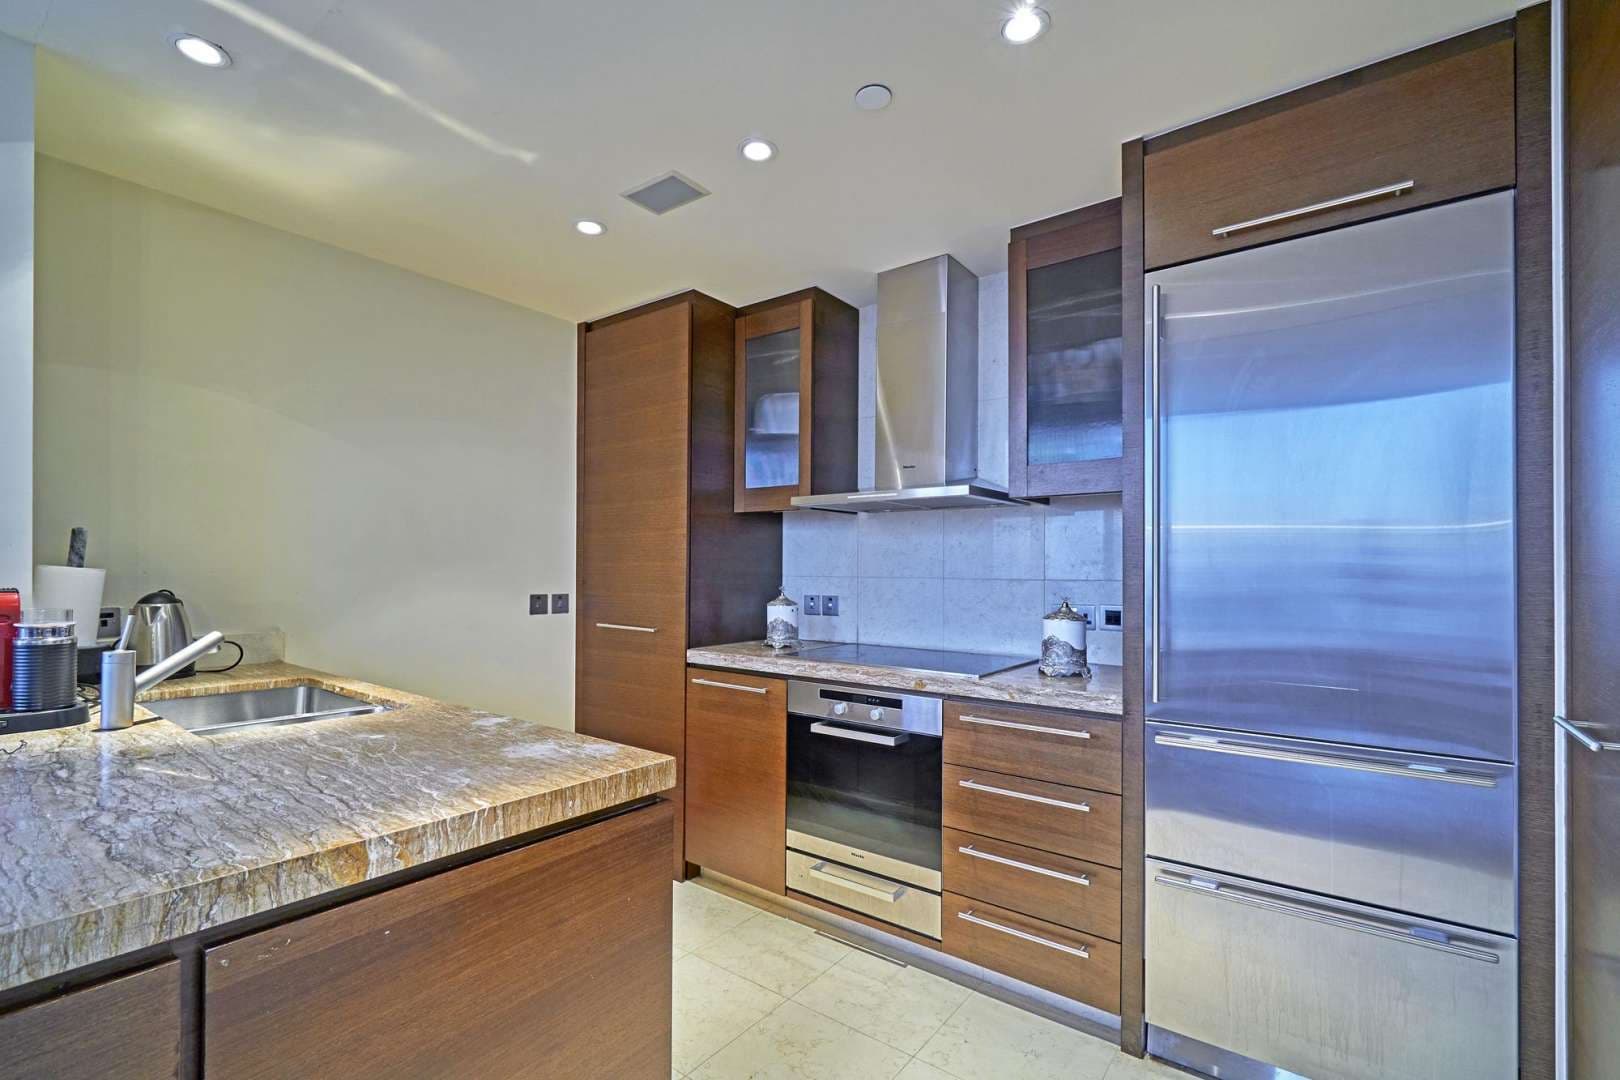 2 Bedroom Apartment For Rent Burj Khalifa Lp05284 2aa19a01d3b51800.jpg